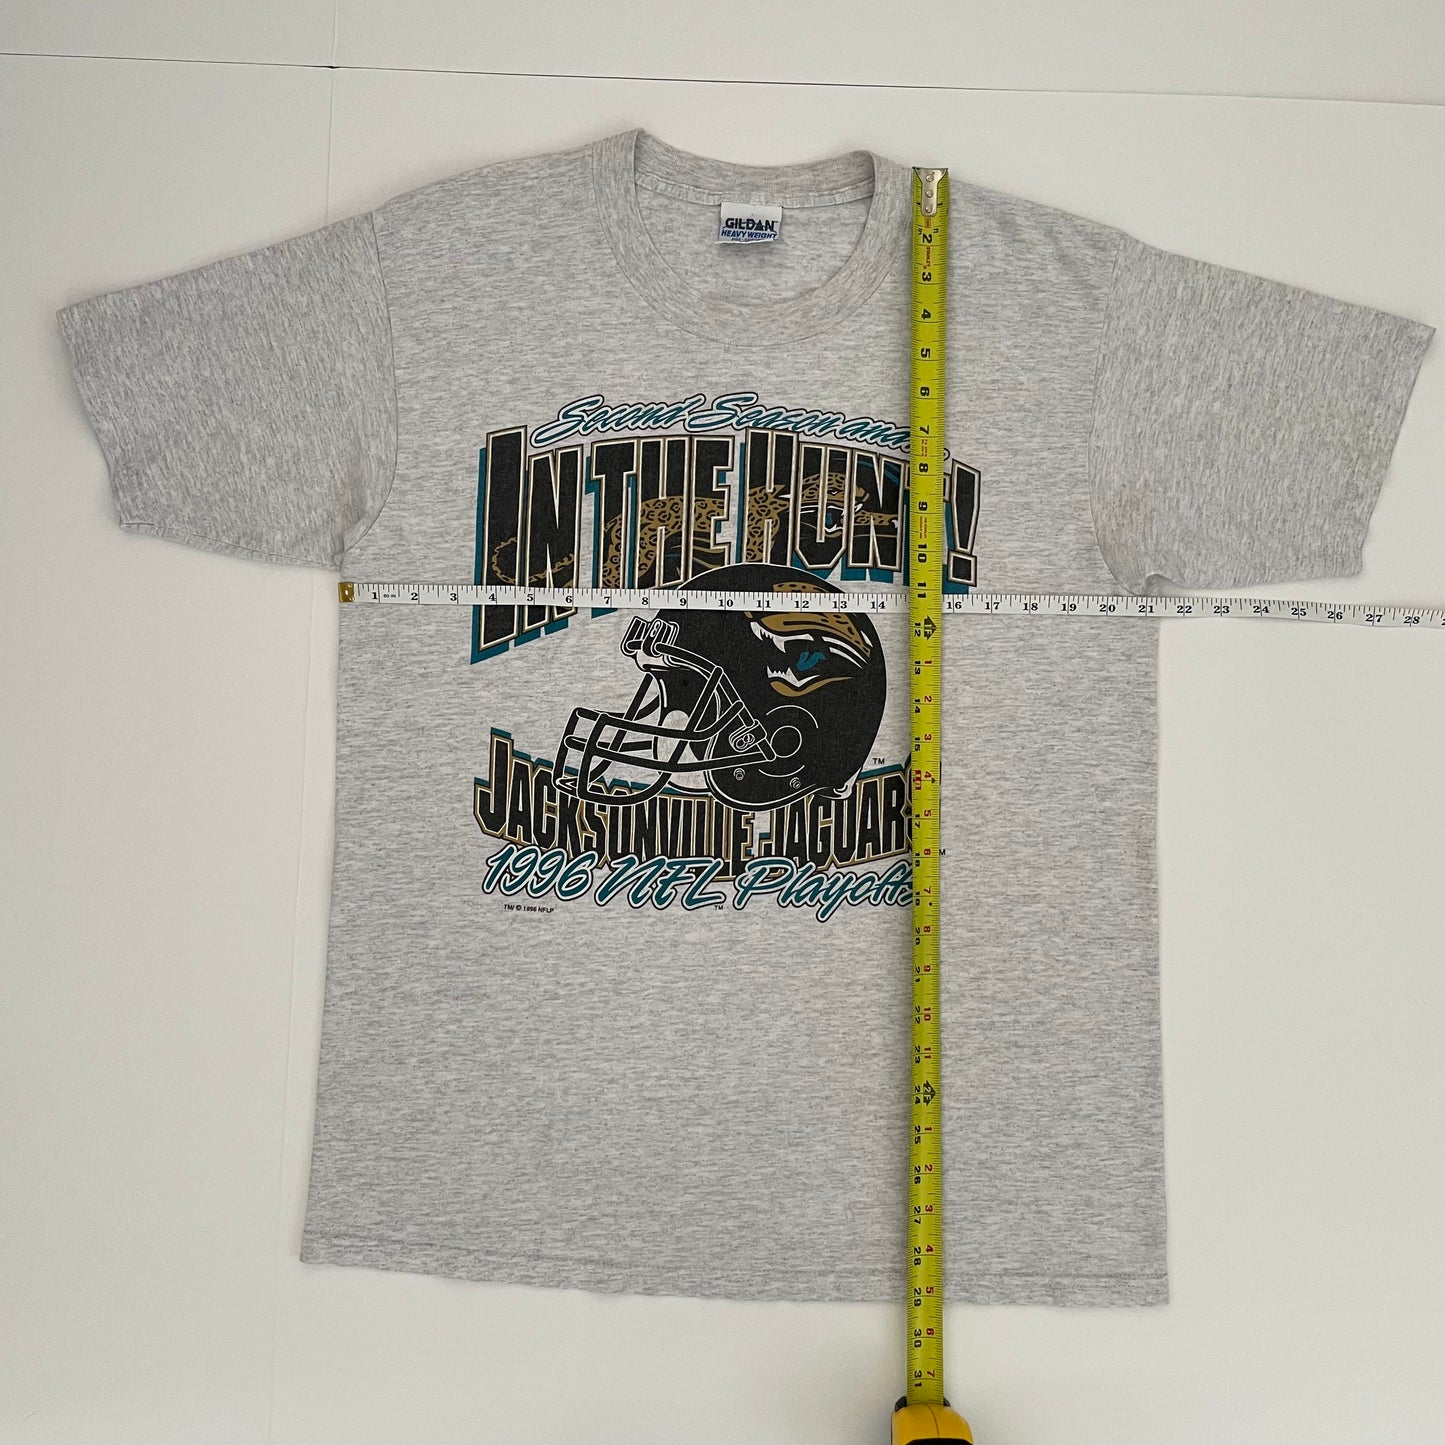 Vintage Jacksonville Jaguars 1996 NFL Playoffs shirt size MEDIUM